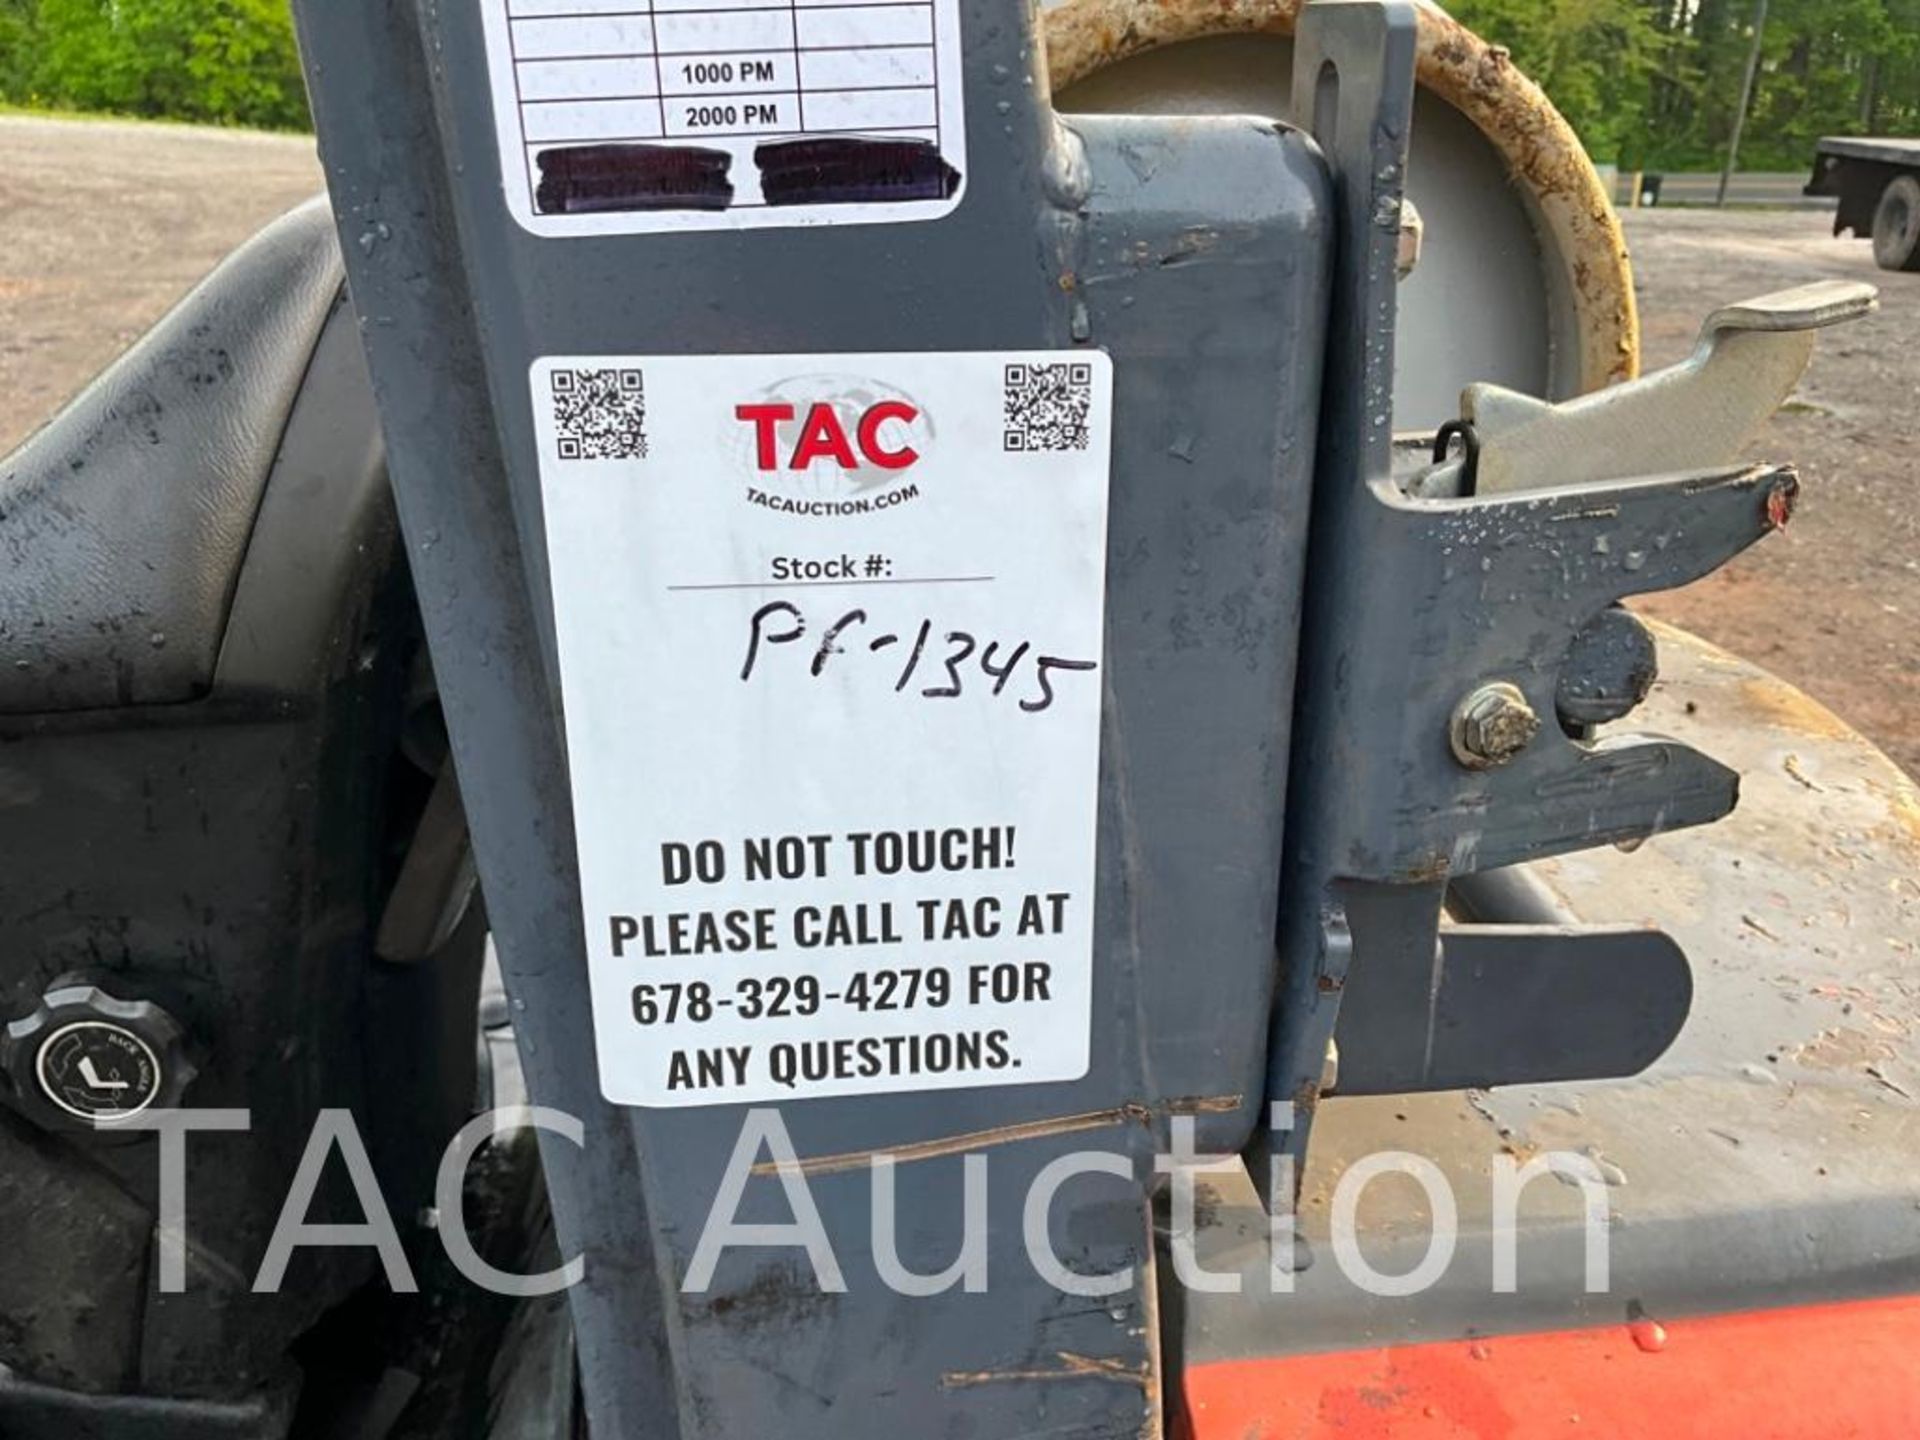 2018 Toyota 8FGCU32 6500lb Forklift - Image 17 of 18